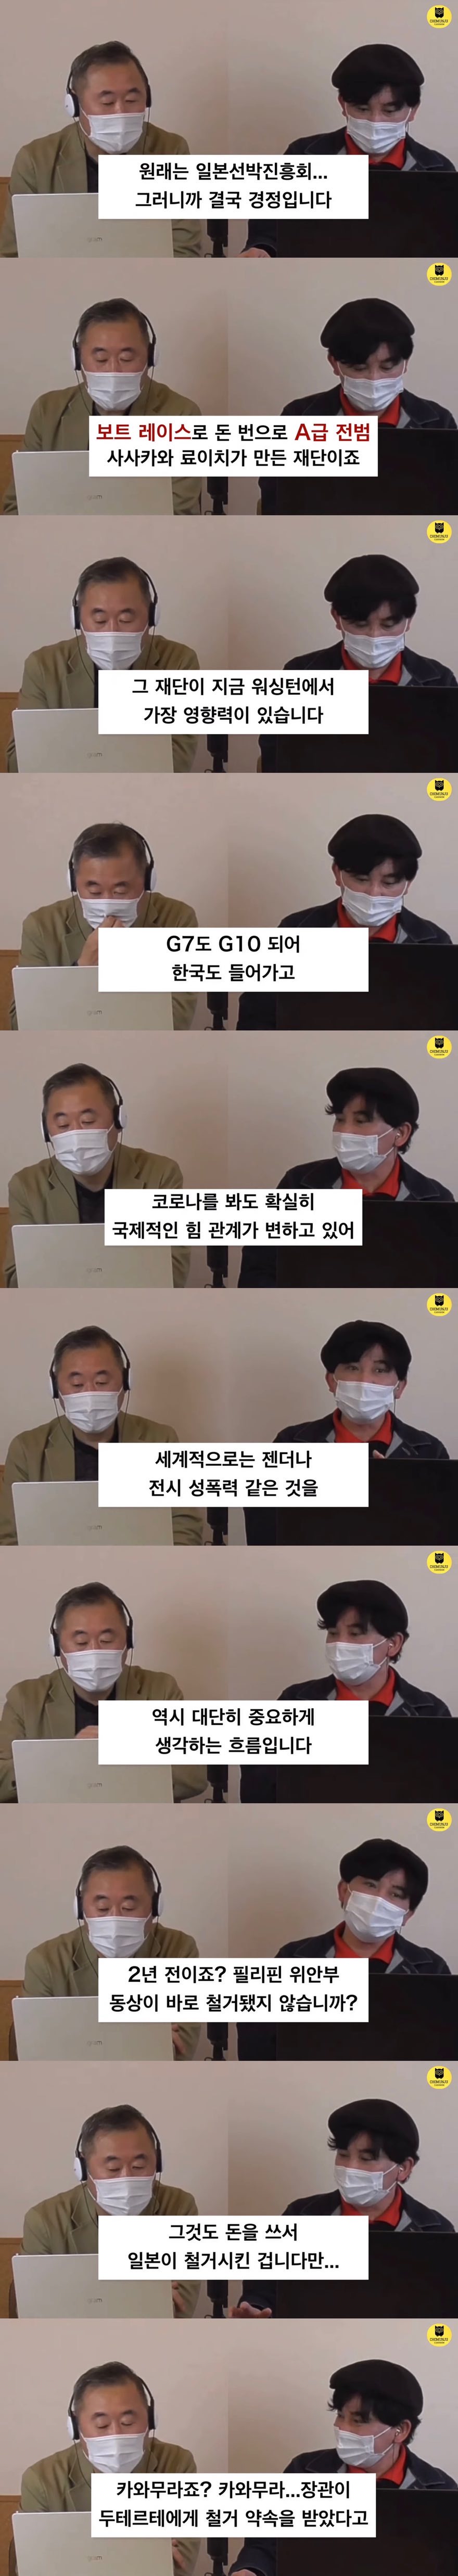 위안부 논란 개입말라는 한국인들이 있는 이유